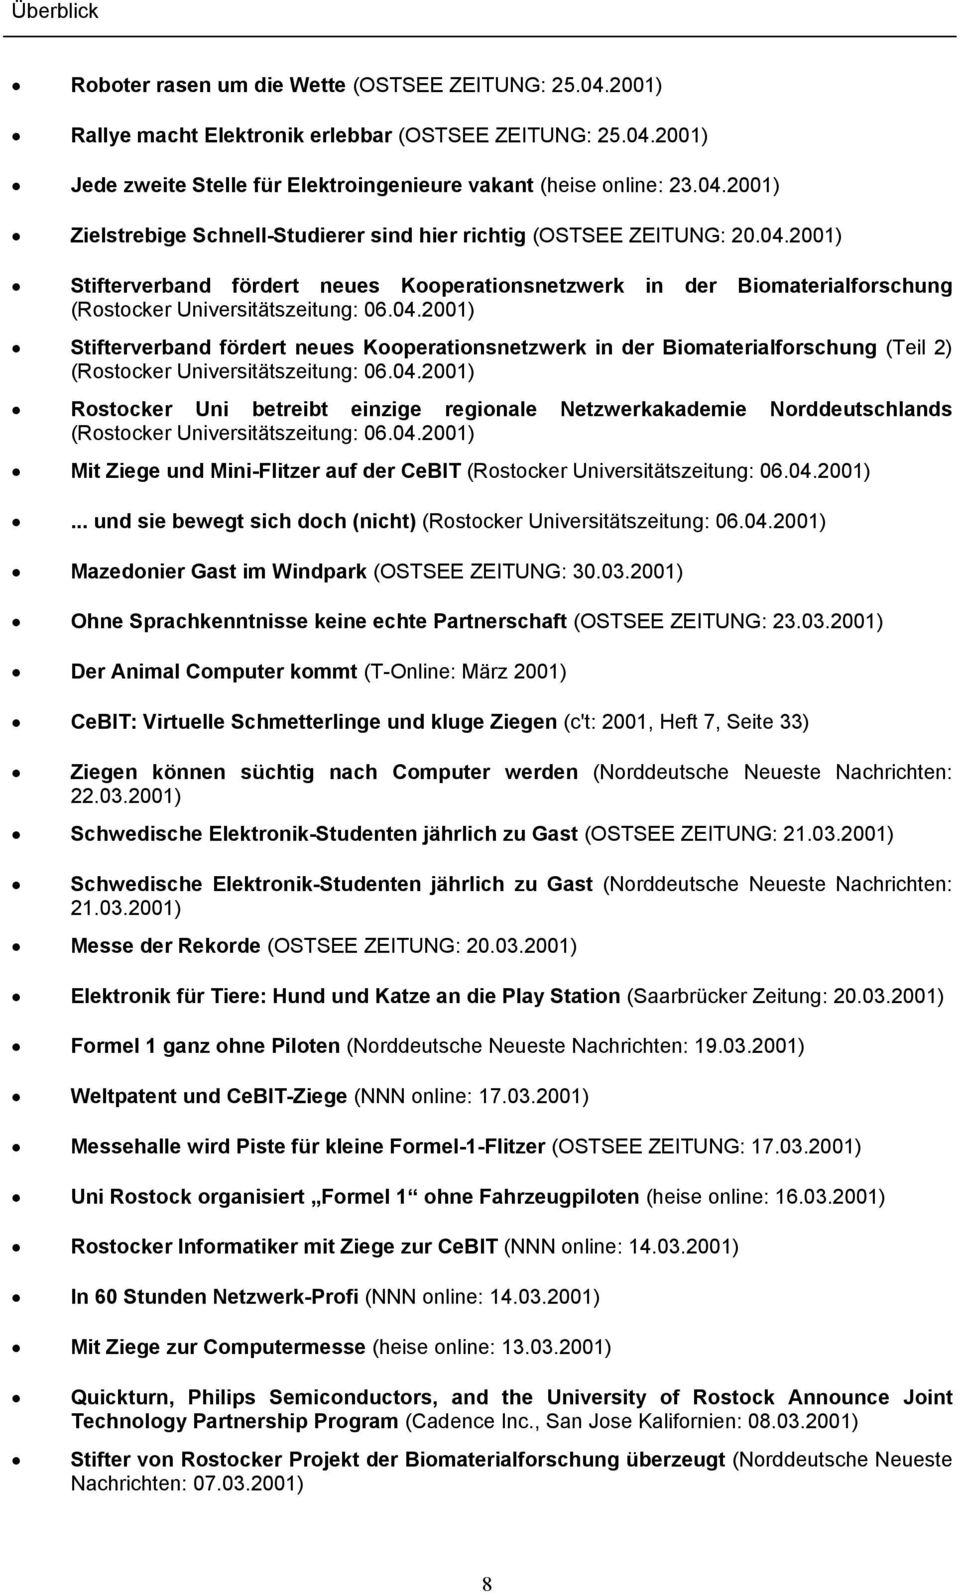 04.2001) Rostocker Uni betreibt einzige regionale Netzwerkakademie Norddeutschlands (Rostocker Universitätszeitung: 06.04.2001) Mit Ziege und Mini-Flitzer auf der CeBIT (Rostocker Universitätszeitung: 06.